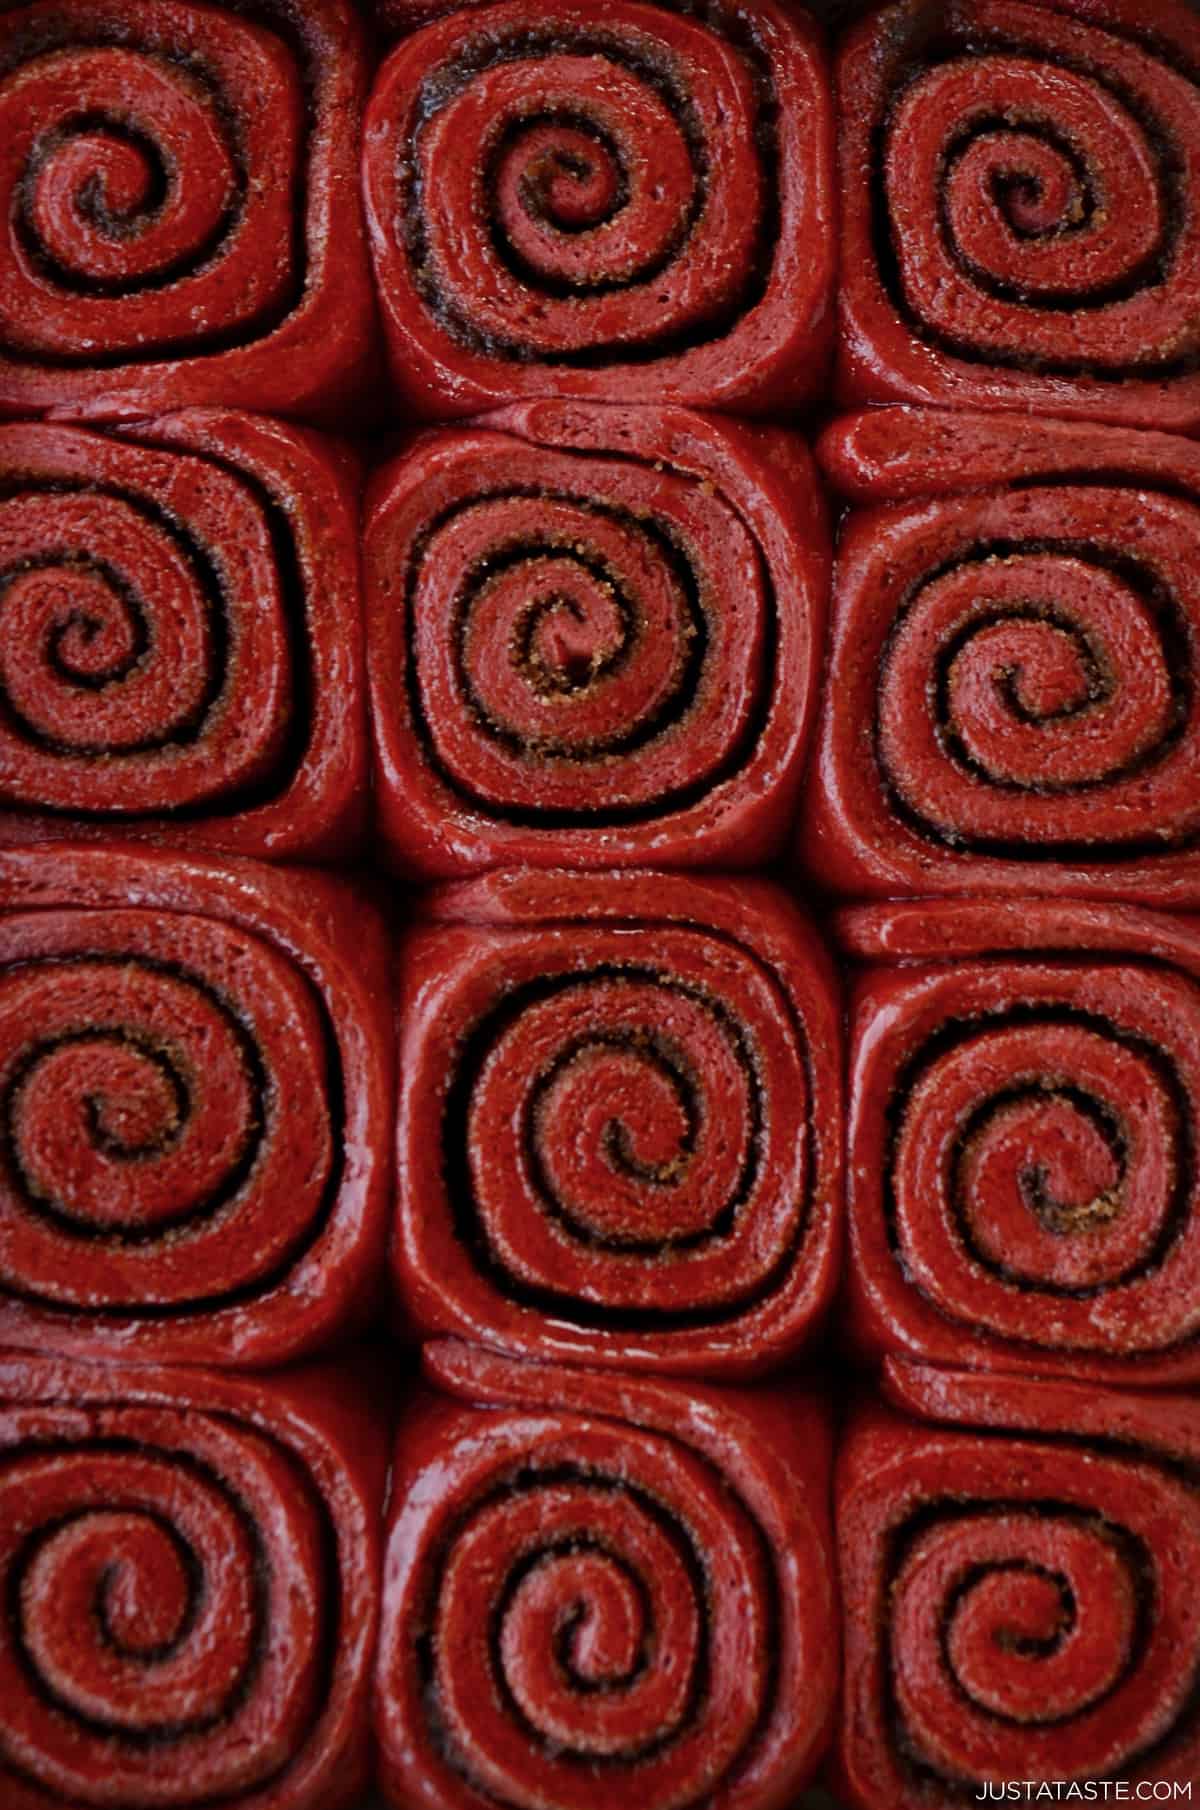 Unfrosted red velvet cinnamon rolls.